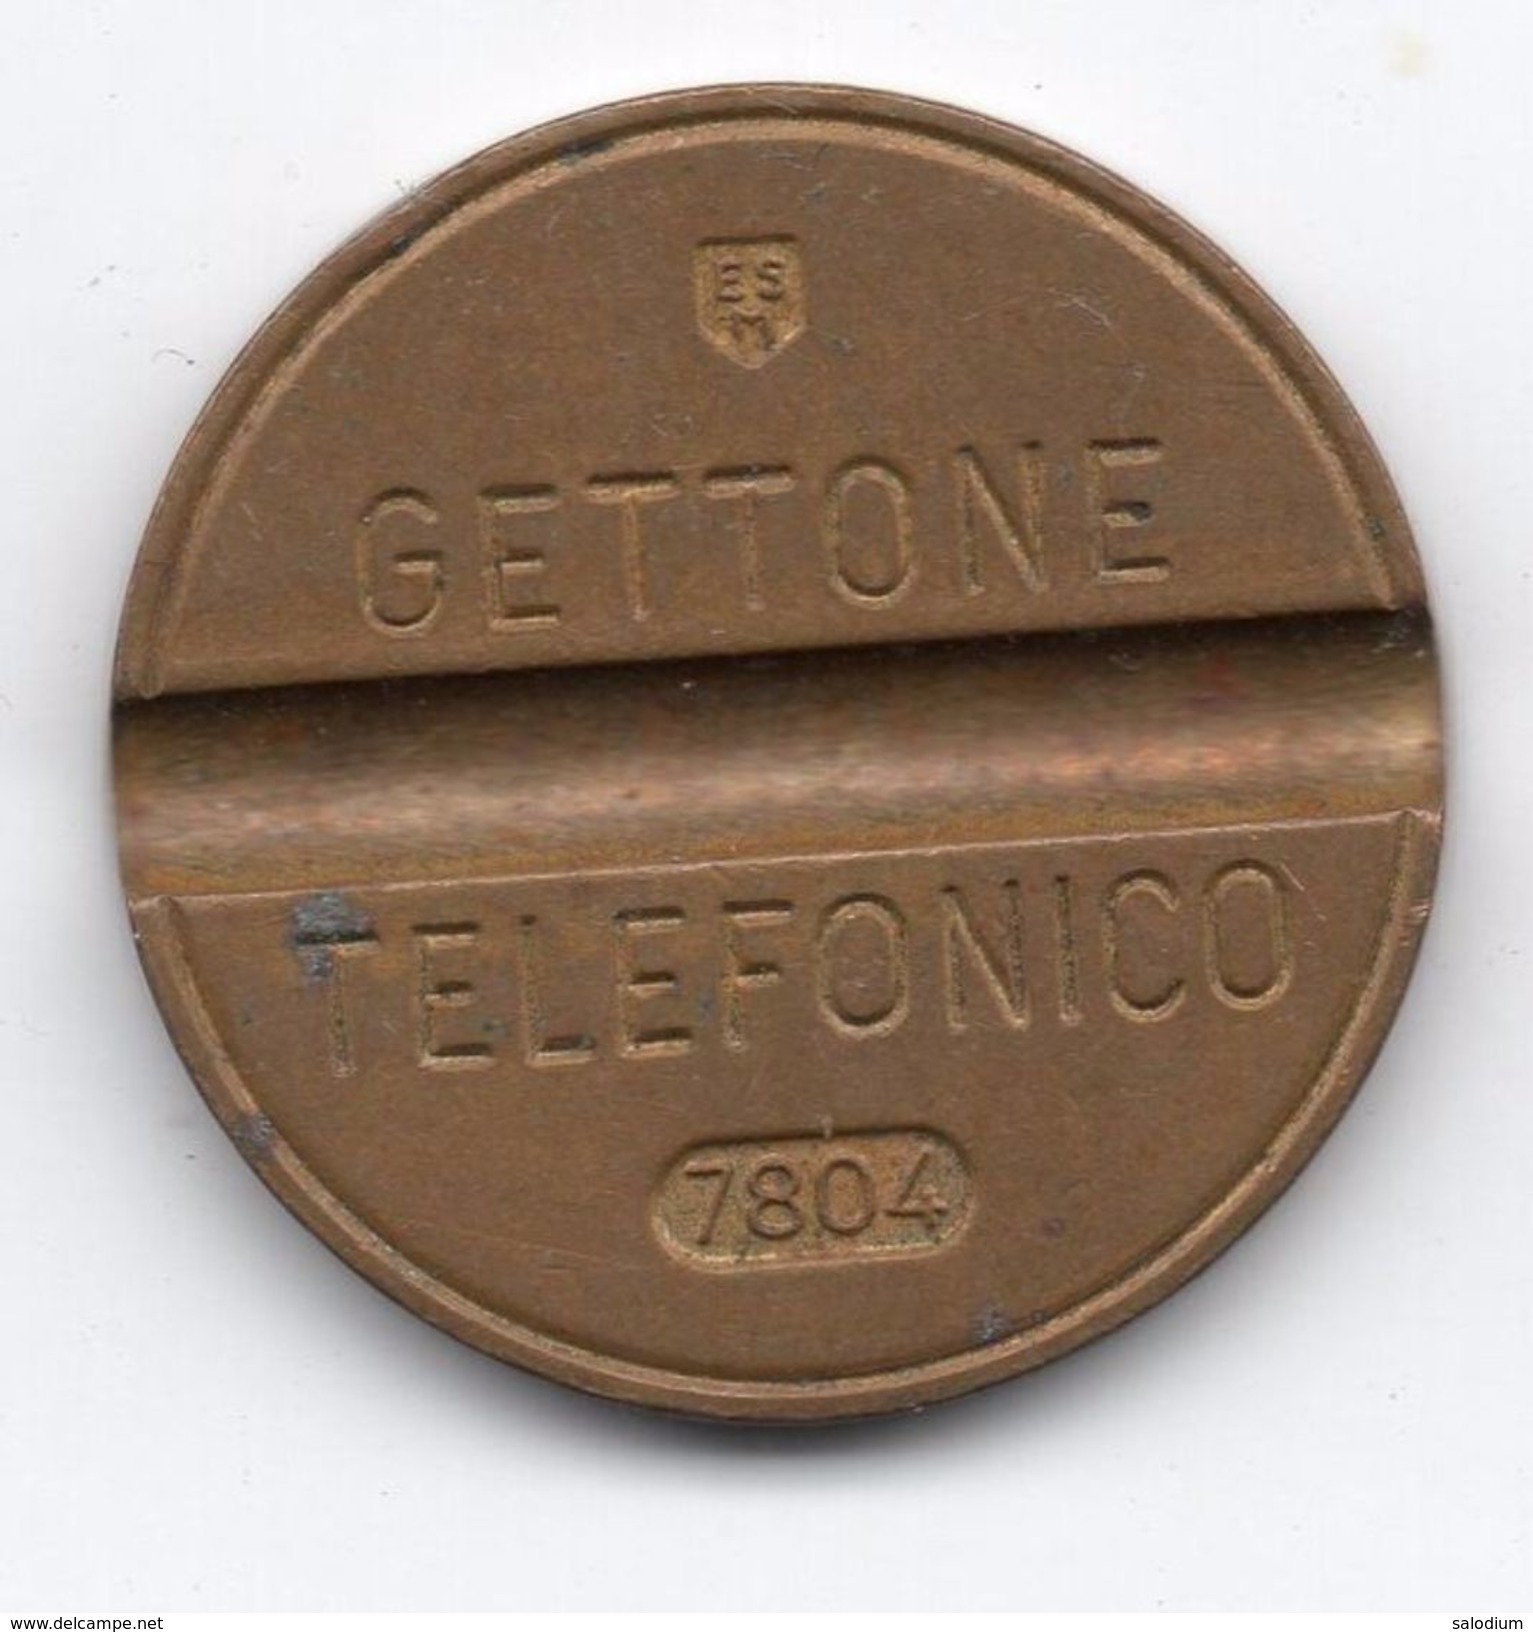 Gettone Telefonico 7804 Token Telephone - (Id-651) - Professionnels/De Société